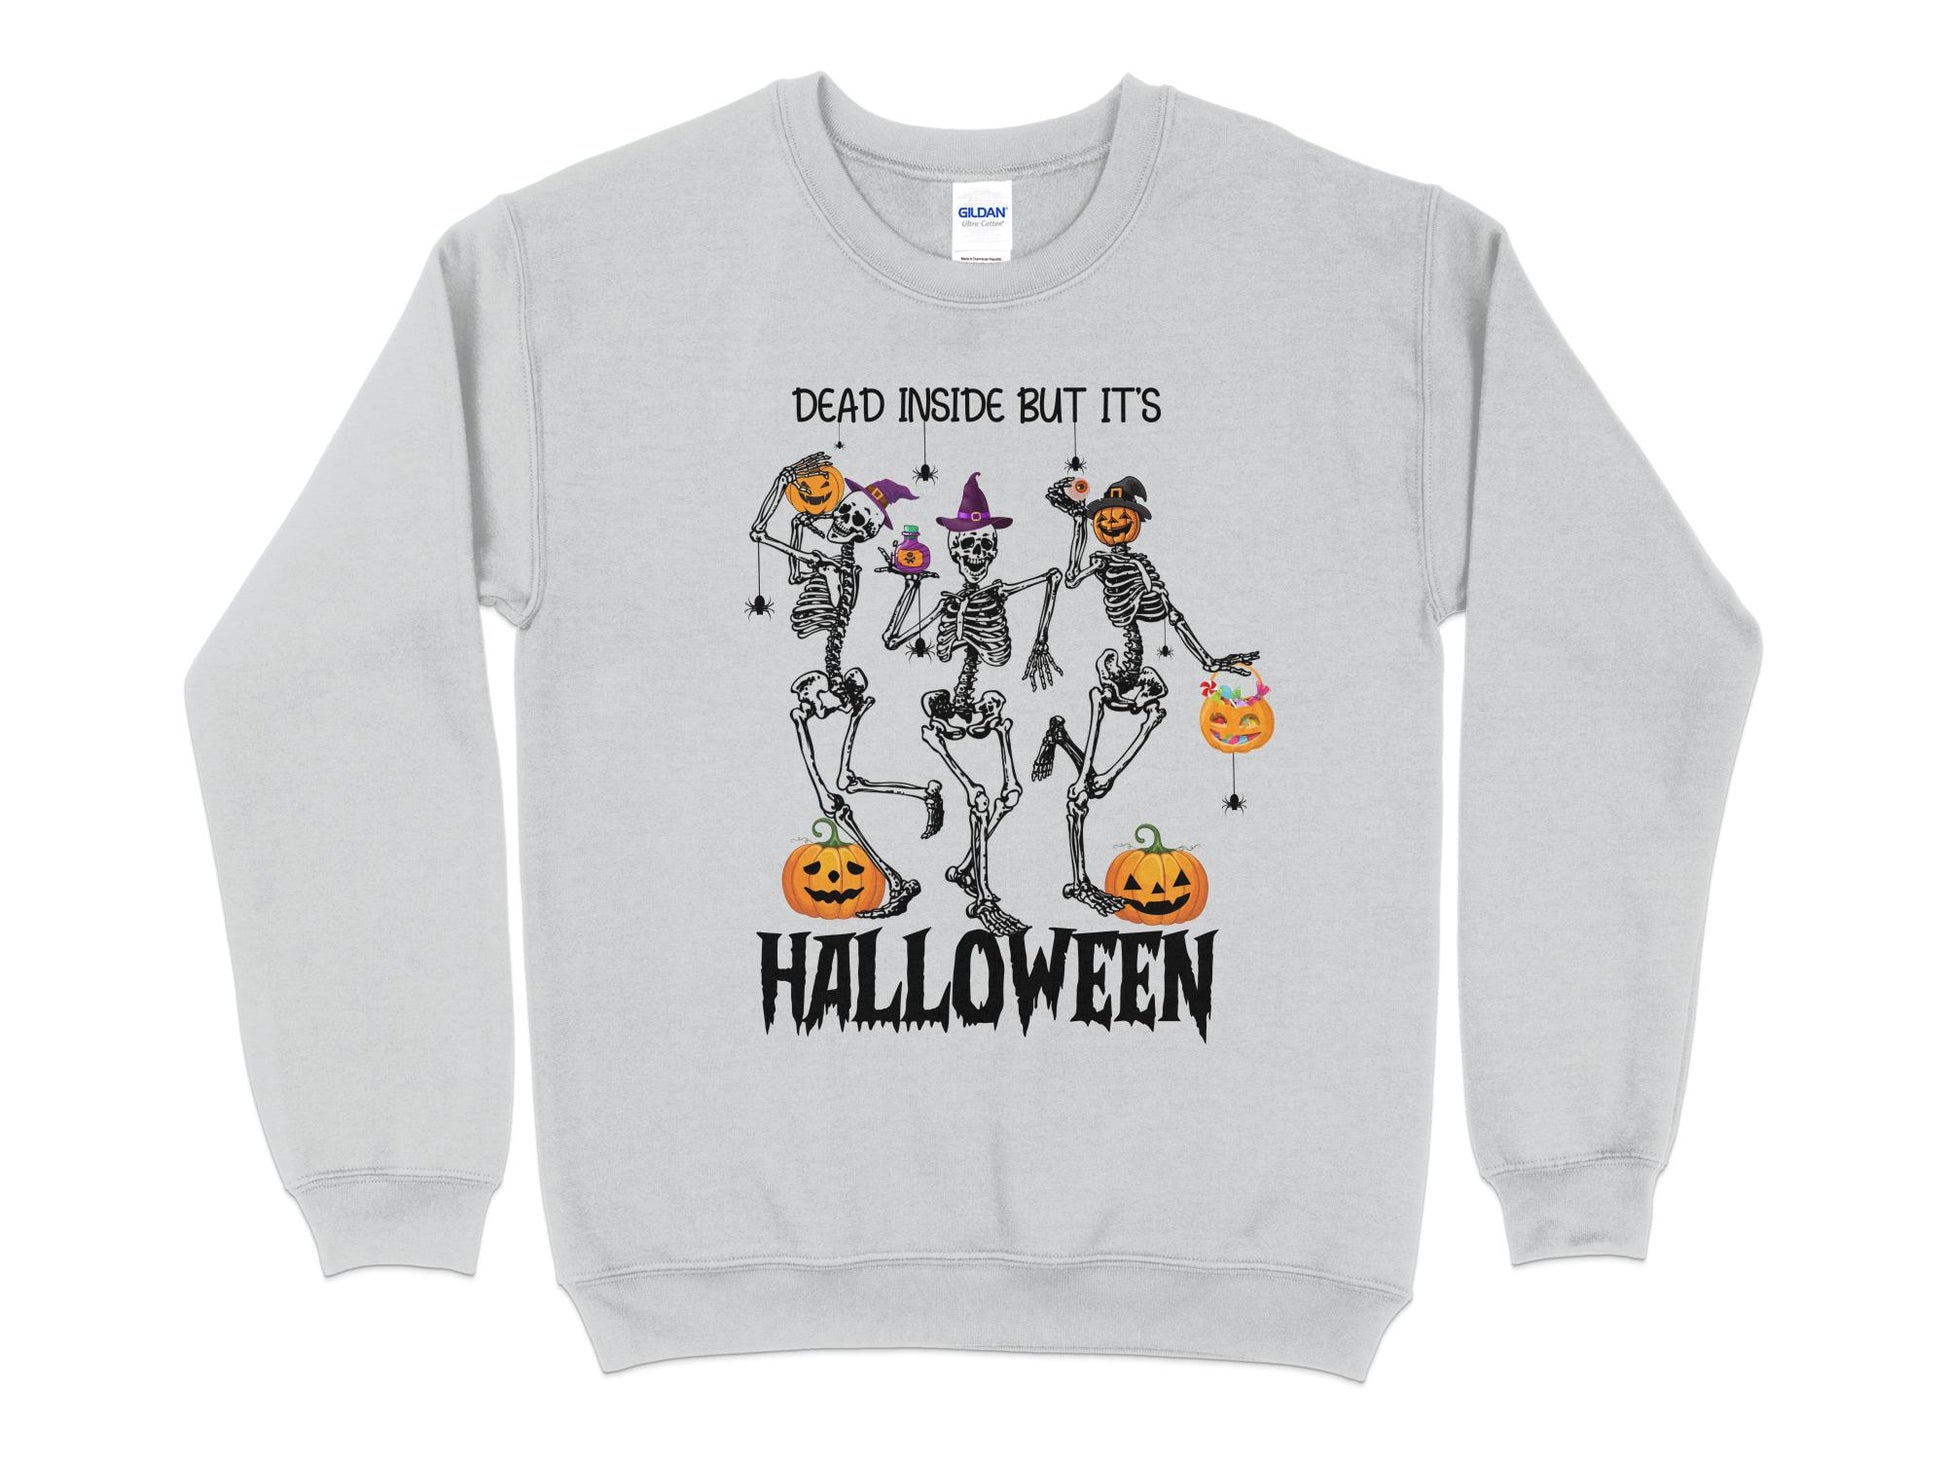 Halloween Sweatshirt, Dead Inside But It's Halloween, Halloween Crew Neck - Mardonyx Sweatshirt S / Sport Grey